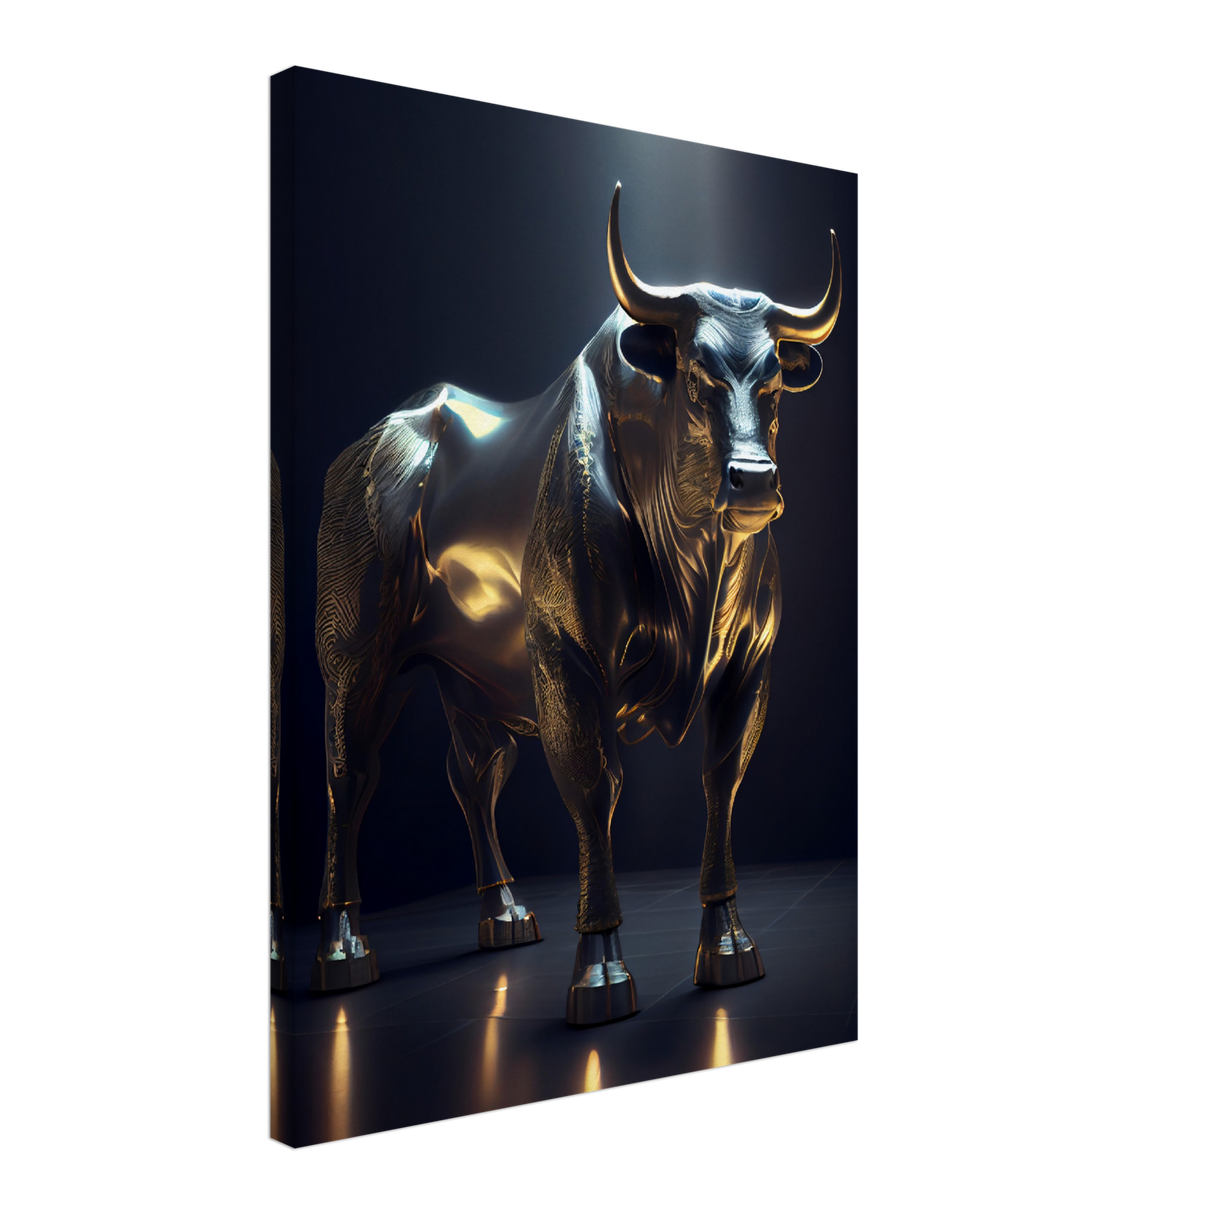 The Bull Of Wall Street - WallLumi